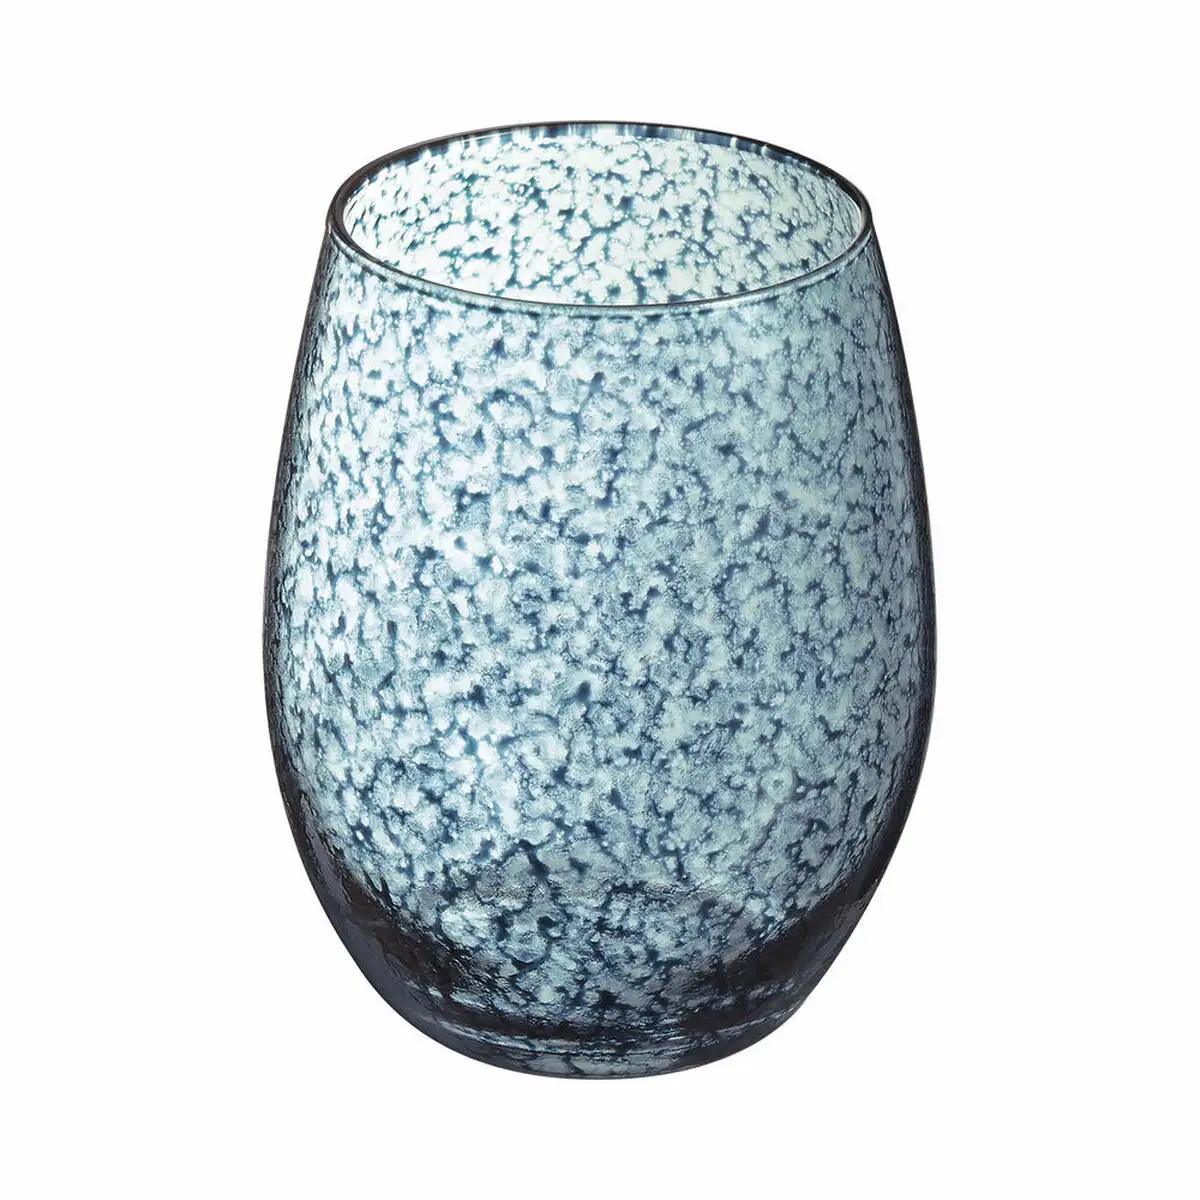 Ensemble de verres chef sommelier artisanat primaire 6 unite s verre bleu 36 cl_8294. DIAYTAR SENEGAL - Votre Portail Vers l'Exclusivité. Explorez notre boutique en ligne pour découvrir des produits uniques et raffinés, conçus pour ceux qui recherchent l'excellence.